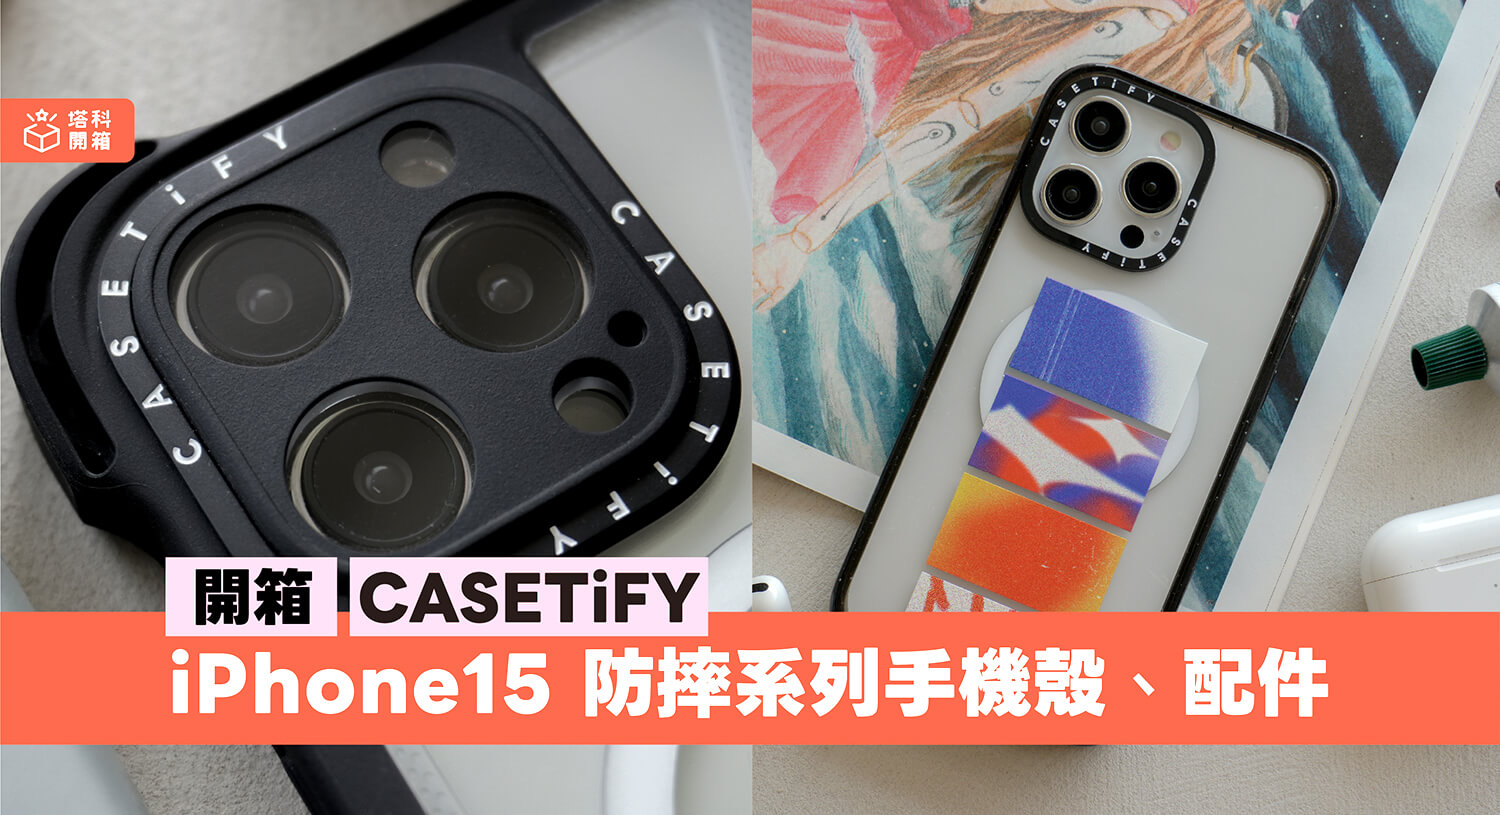 【開箱評測】CASETiFY iPhone 15 防摔手機殼與配件